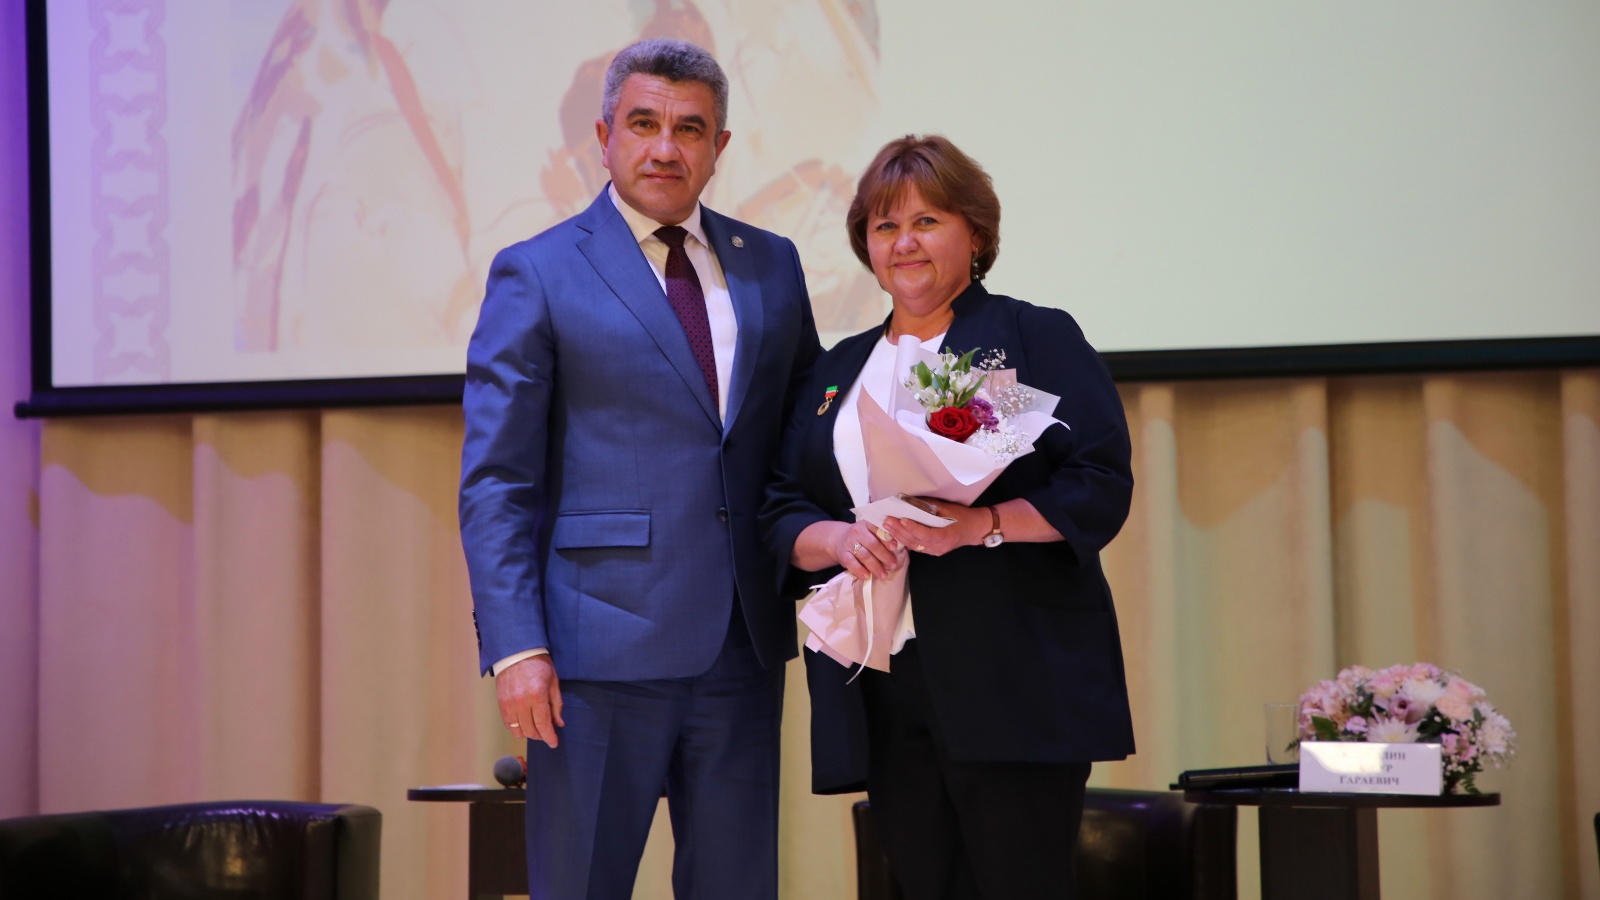 Гурьянова Марина Леонидовна награждена нагрудным знаком «За заслуги в образовании Республики Татарстан».